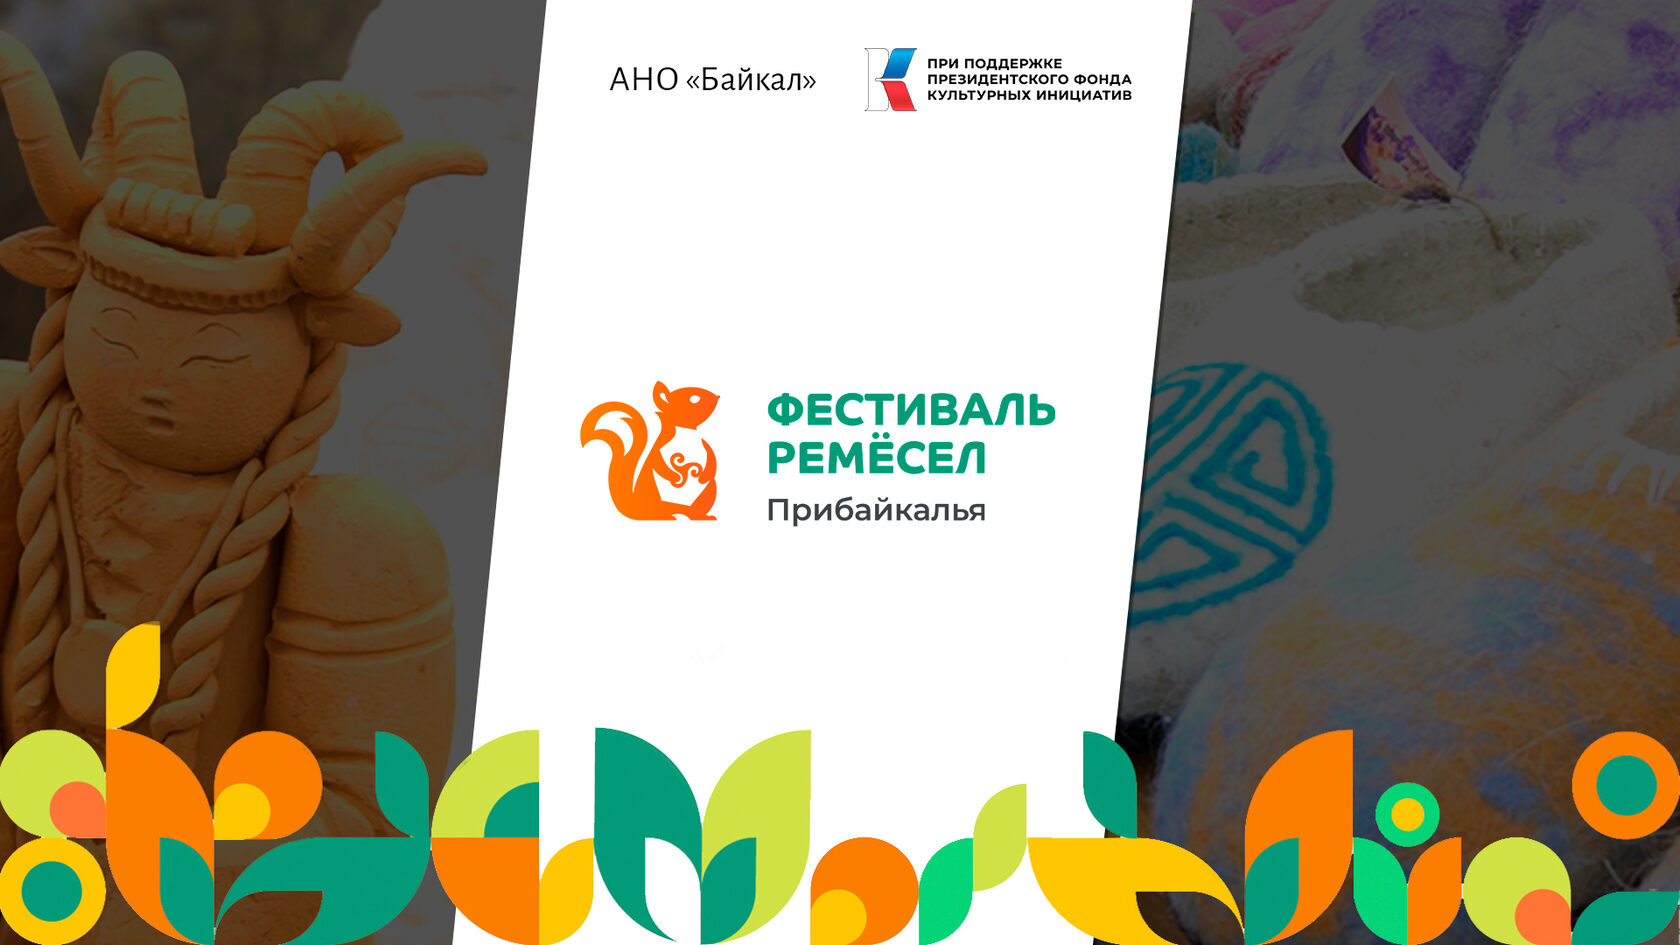 Второй фестиваль ремесел Прибайкалья пройдет в Иркутской области 9-10 июня